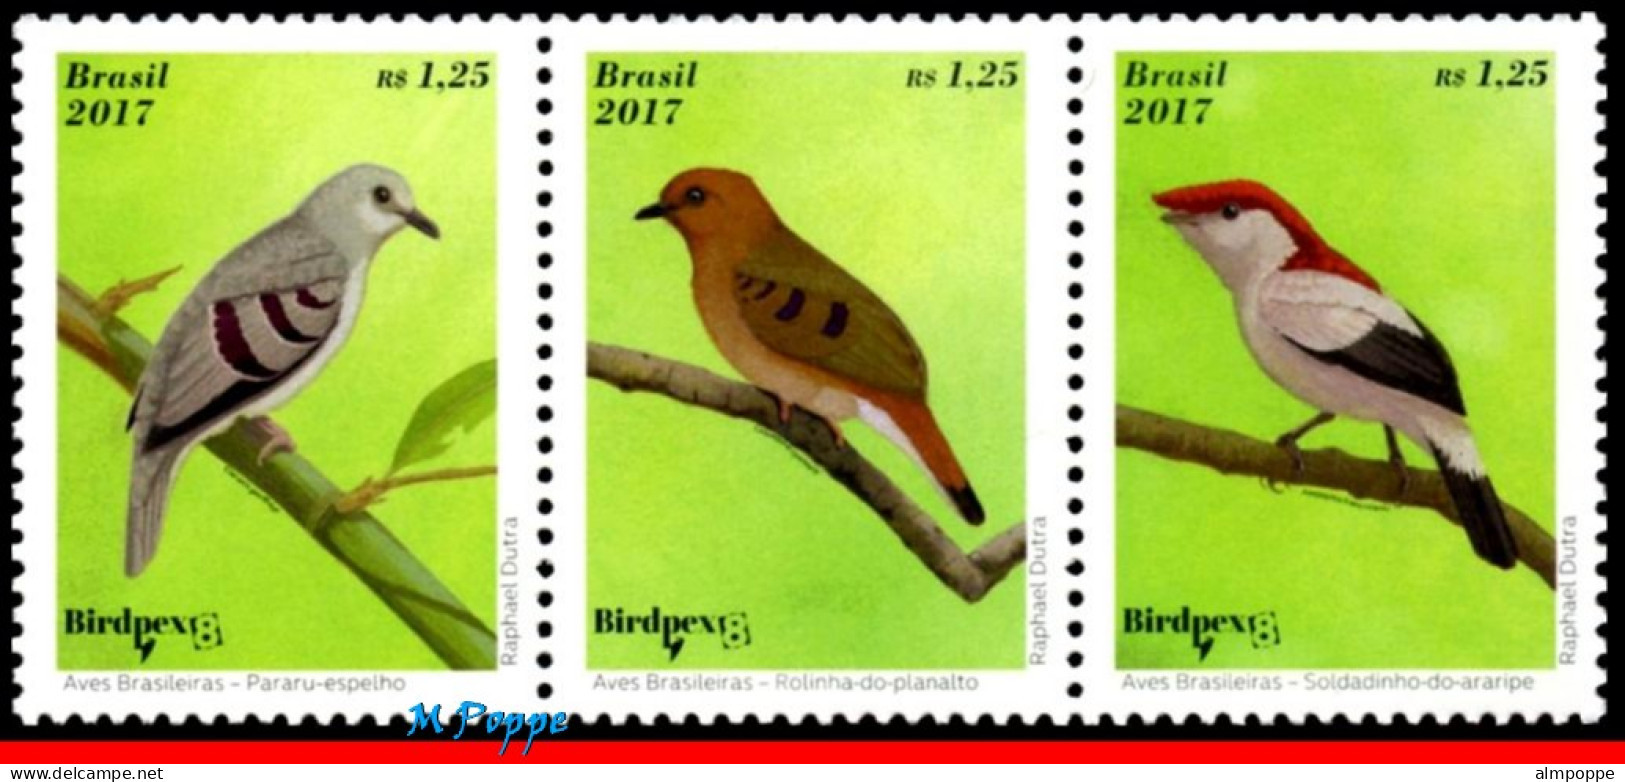 Ref. BR-V2017-04-4 BRAZIL 2017 - BRAZILIAN BIRDS,BIRDPEX 8, ENDANGERED, SHEET MNH, BIRDS 15V - Blokken & Velletjes